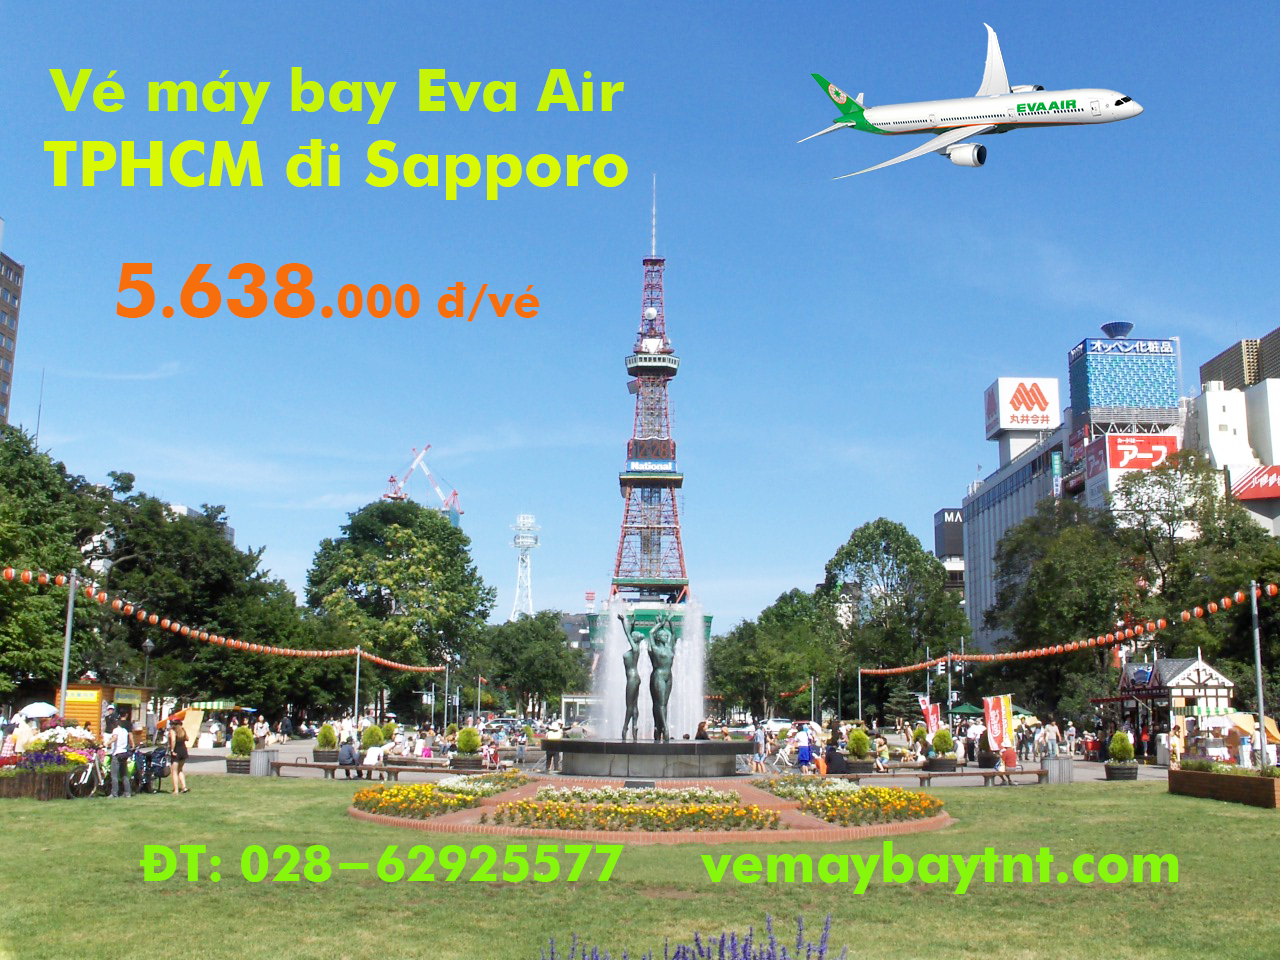 Vé máy bay TPHCM đi Sapporo (Sài Gòn – Sapporo) Eva Air từ 5.638 k